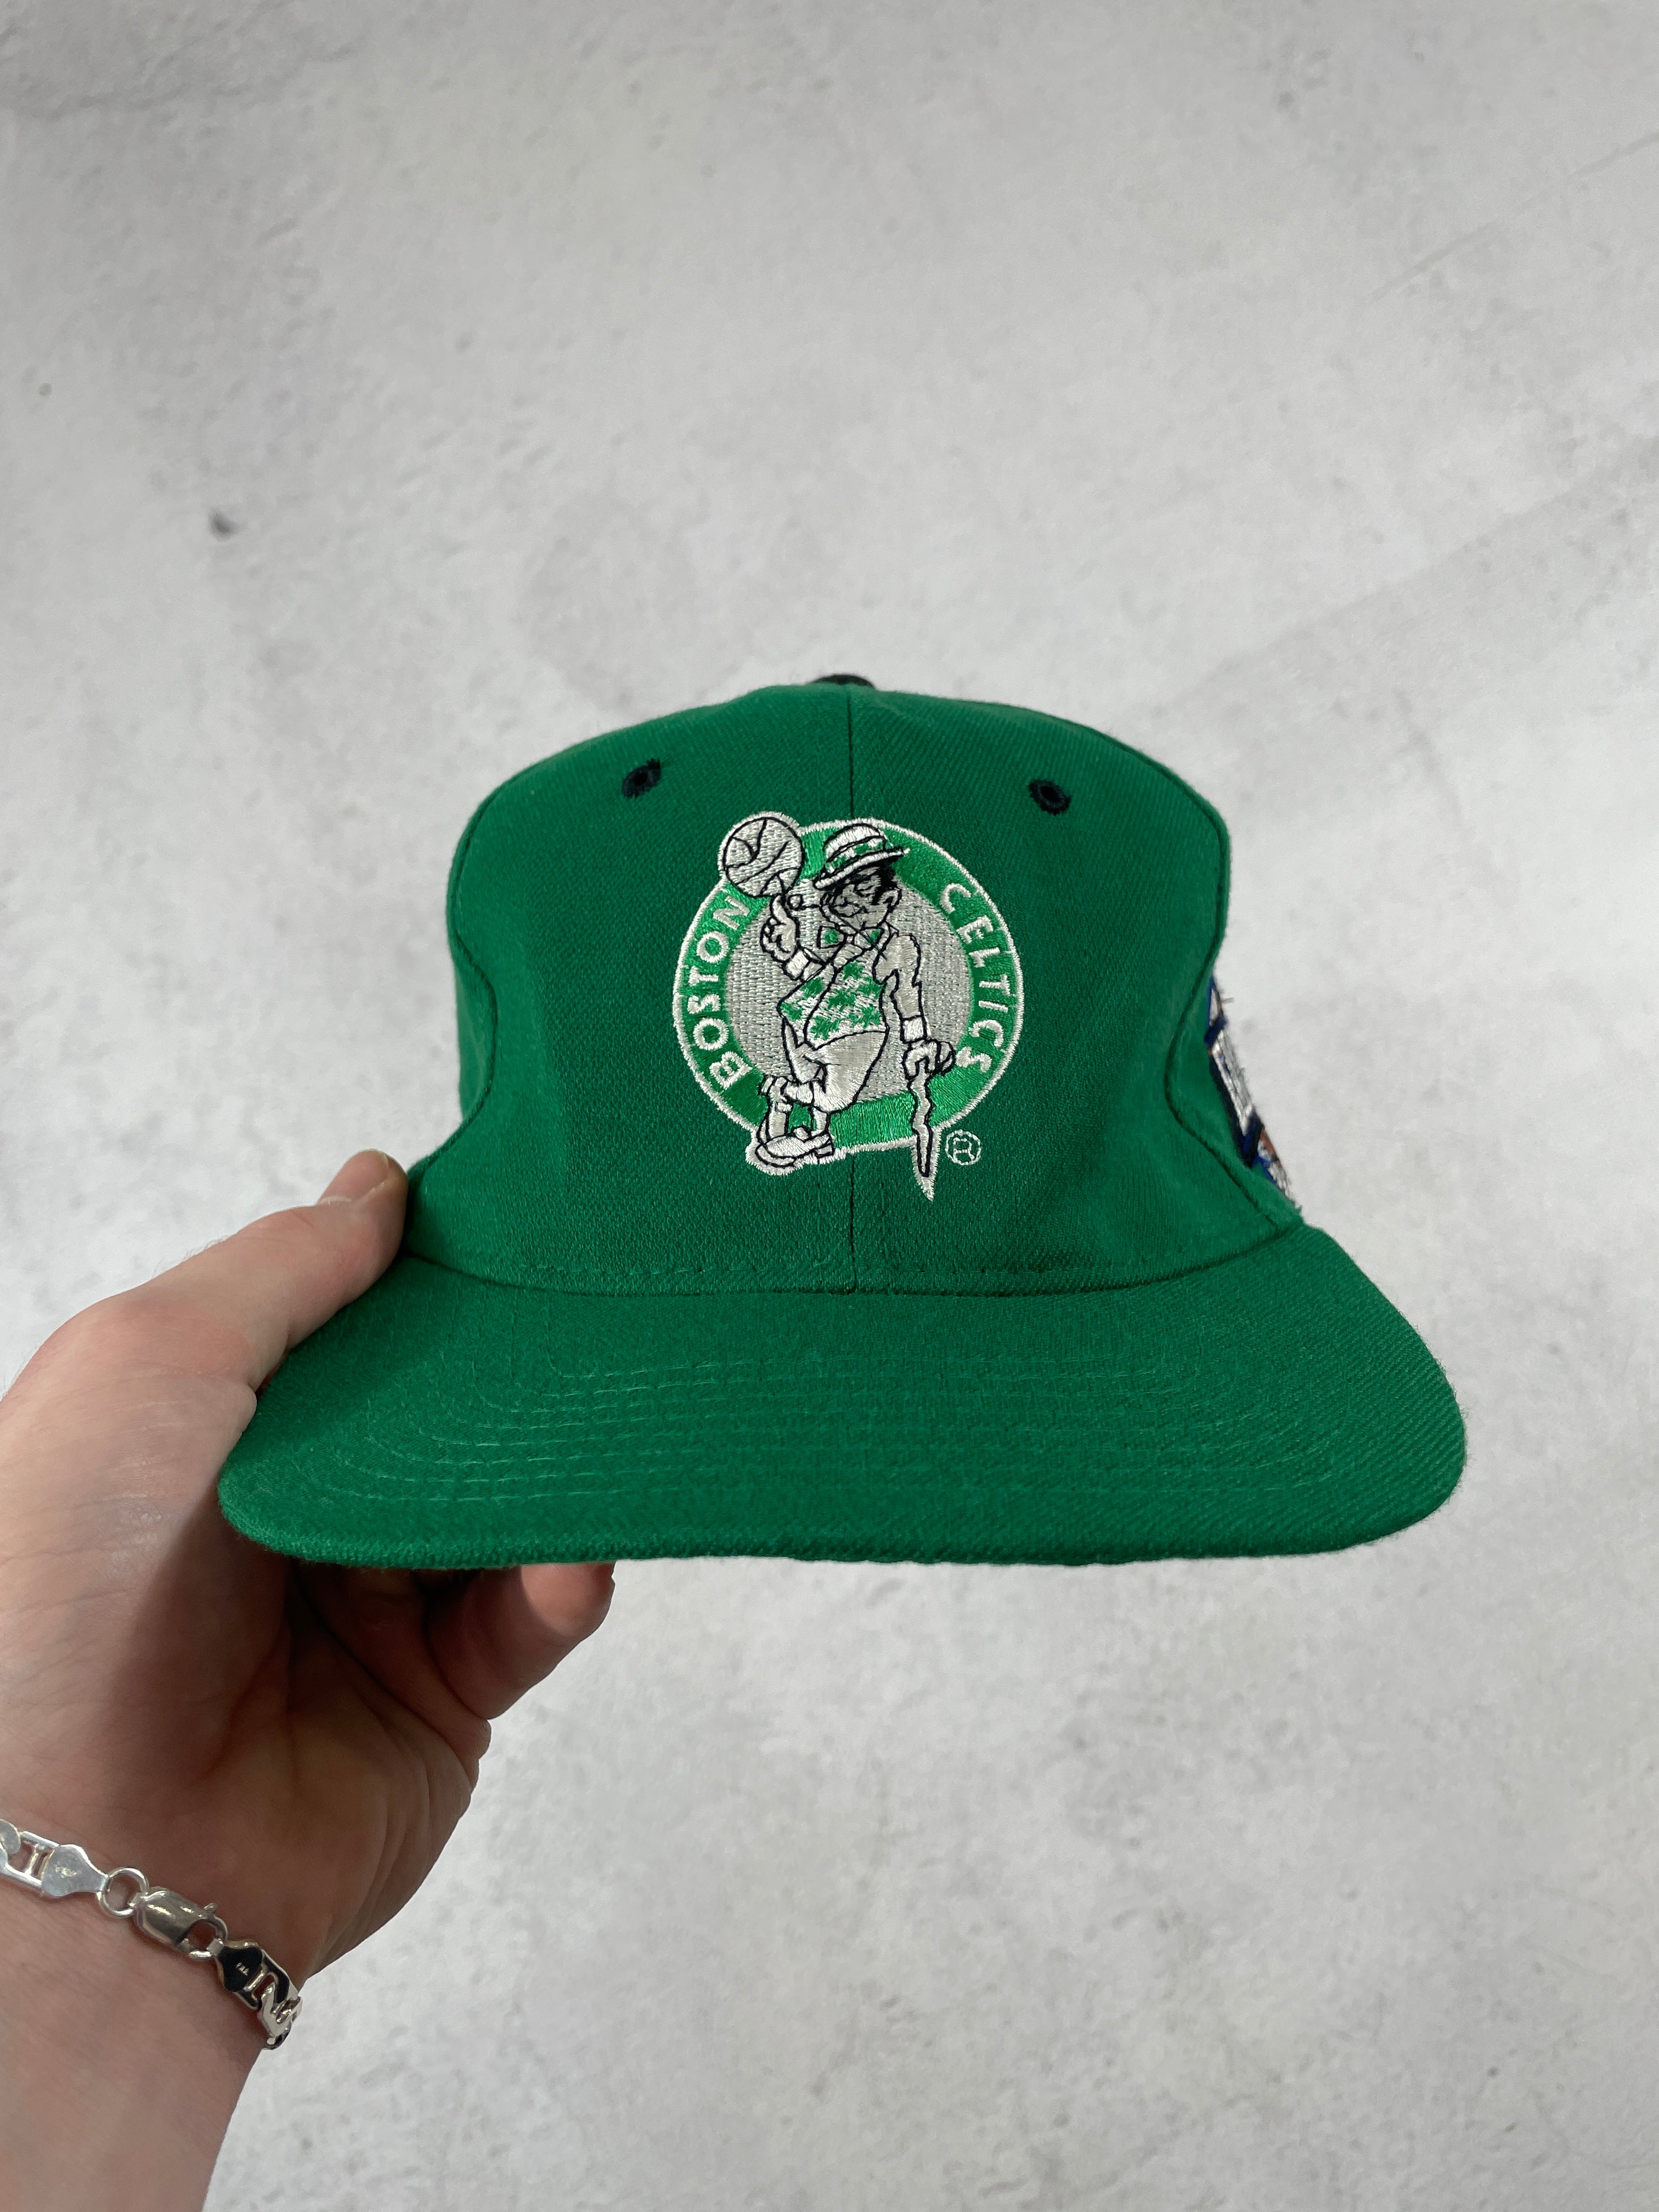 Vintage NBA Boston Celtics Fitted Hat - 7 3/4